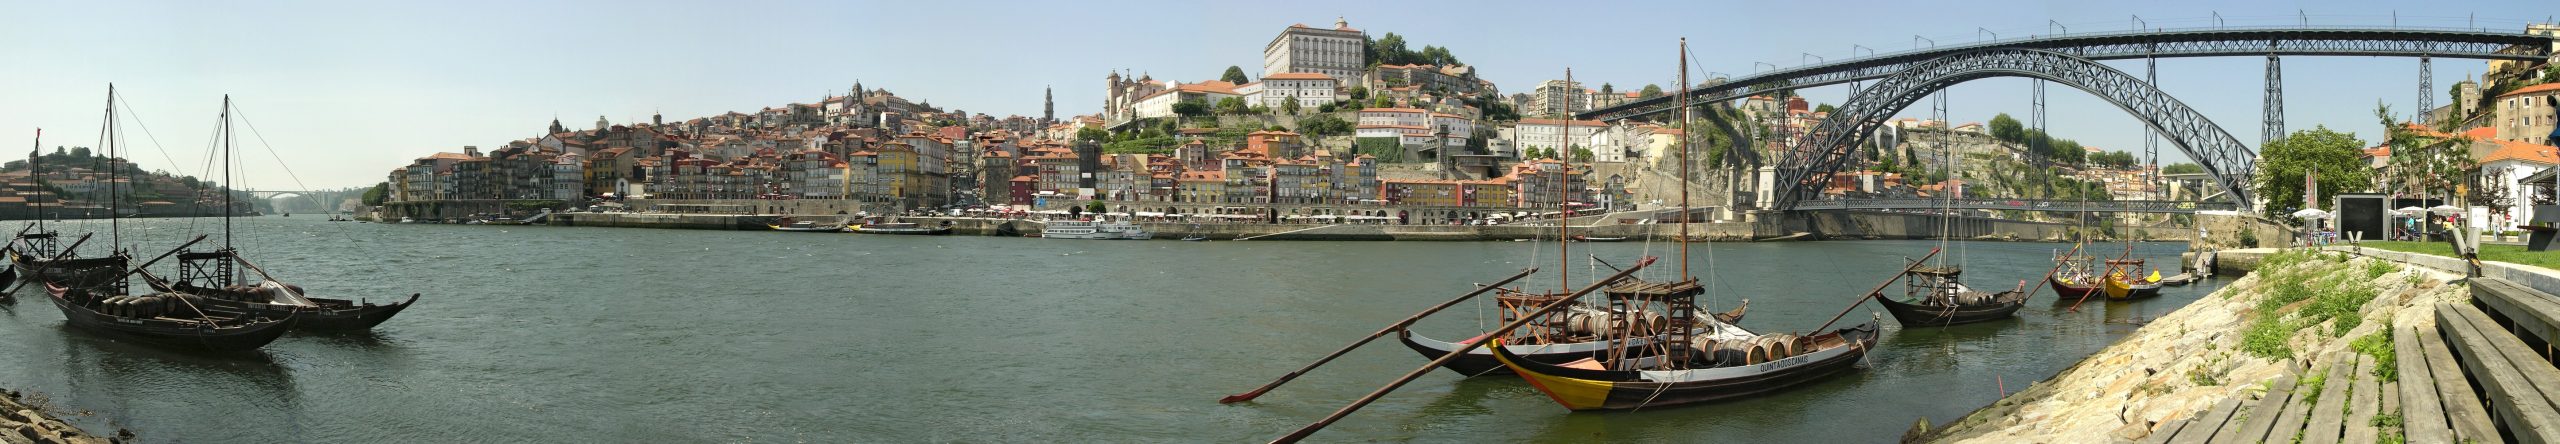 مدينة بورتو في البرتغال